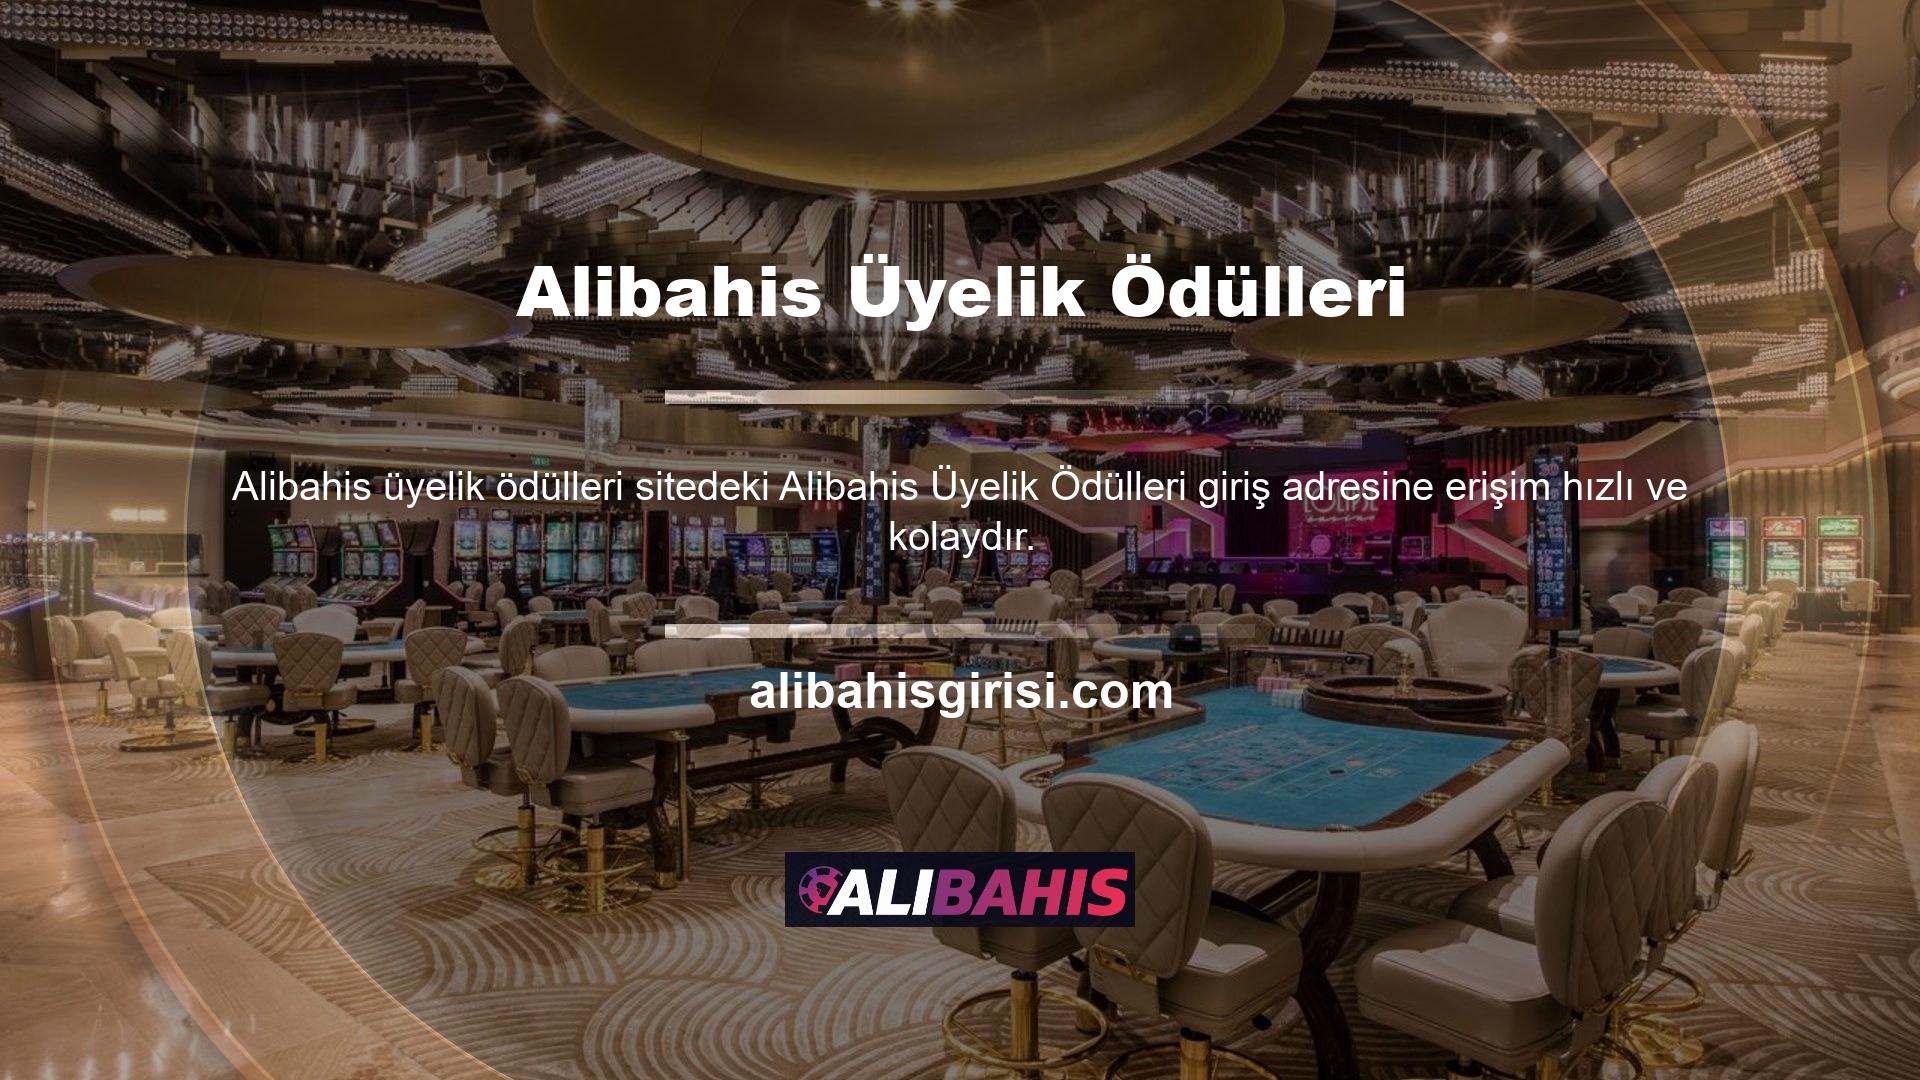 Yüksek bonus ve spor bahis teklifleri ile Alibahis casino ve canlı bahis sitesi oyun sektörünün öne çıkan bir oyuncusu haline geldi